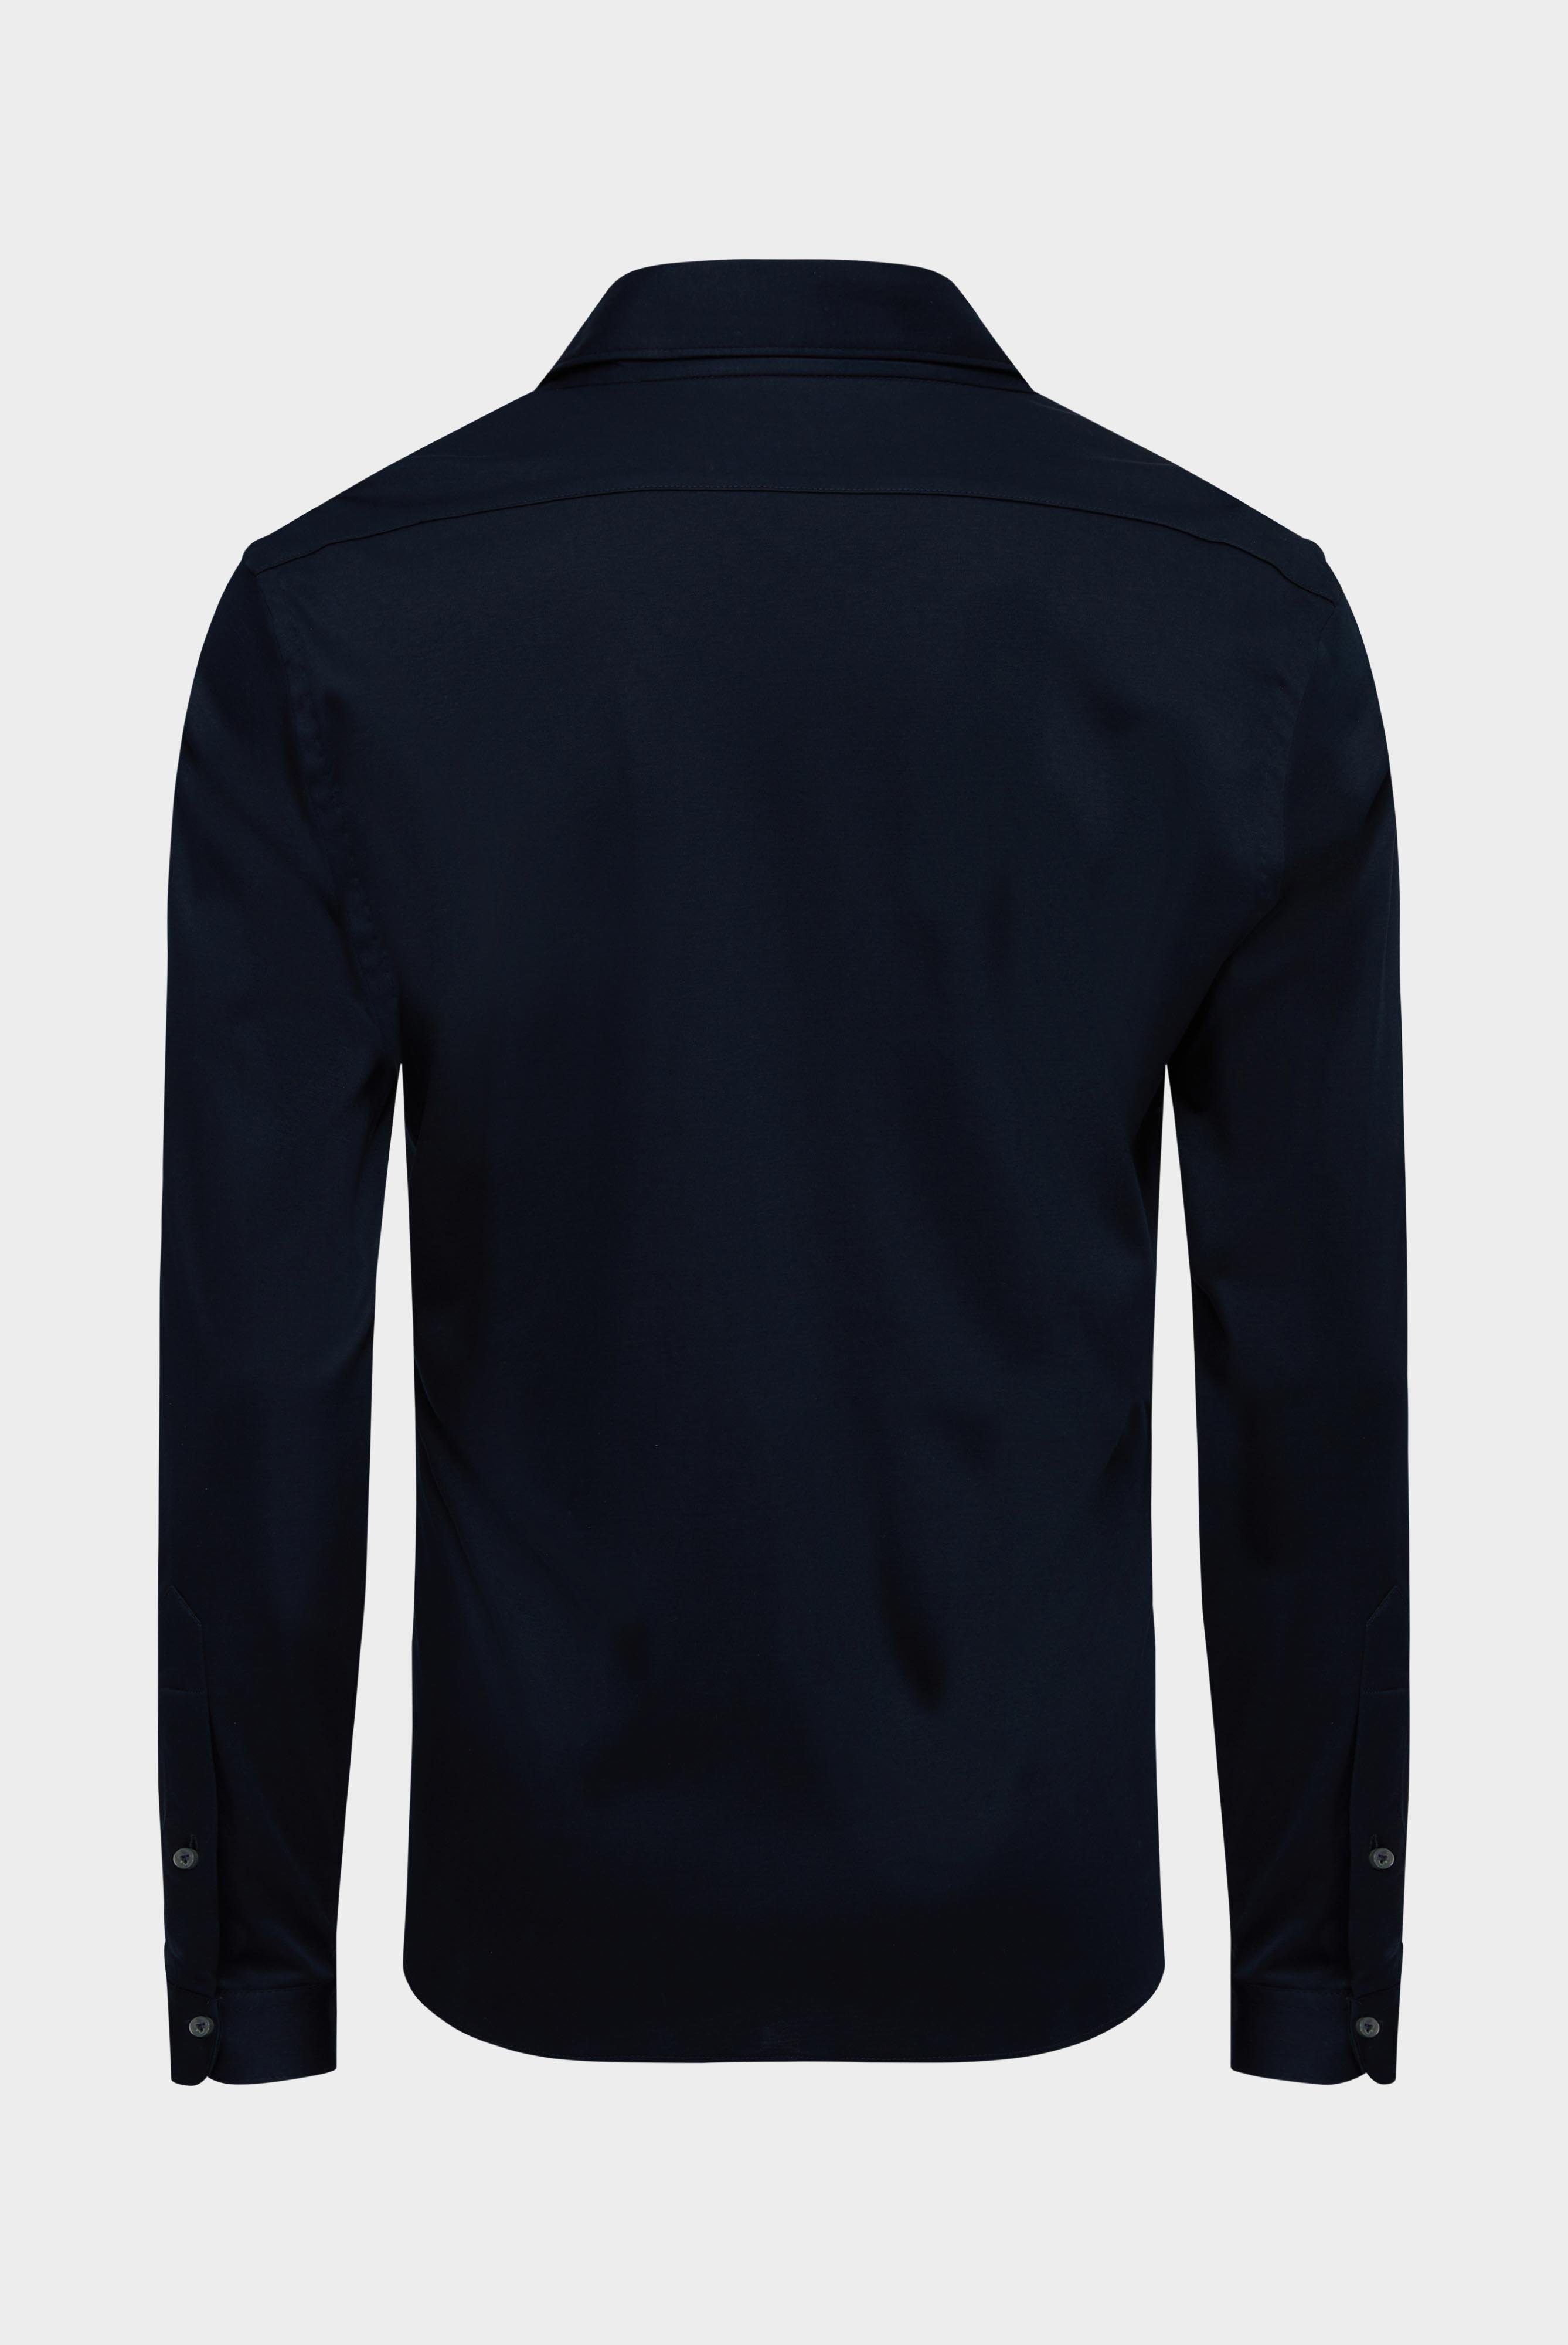 Bügelleichte Hemden+Jersey Hemd mit glänzender Optik Tailor Fit+20.1683.UC.180031.790.XL